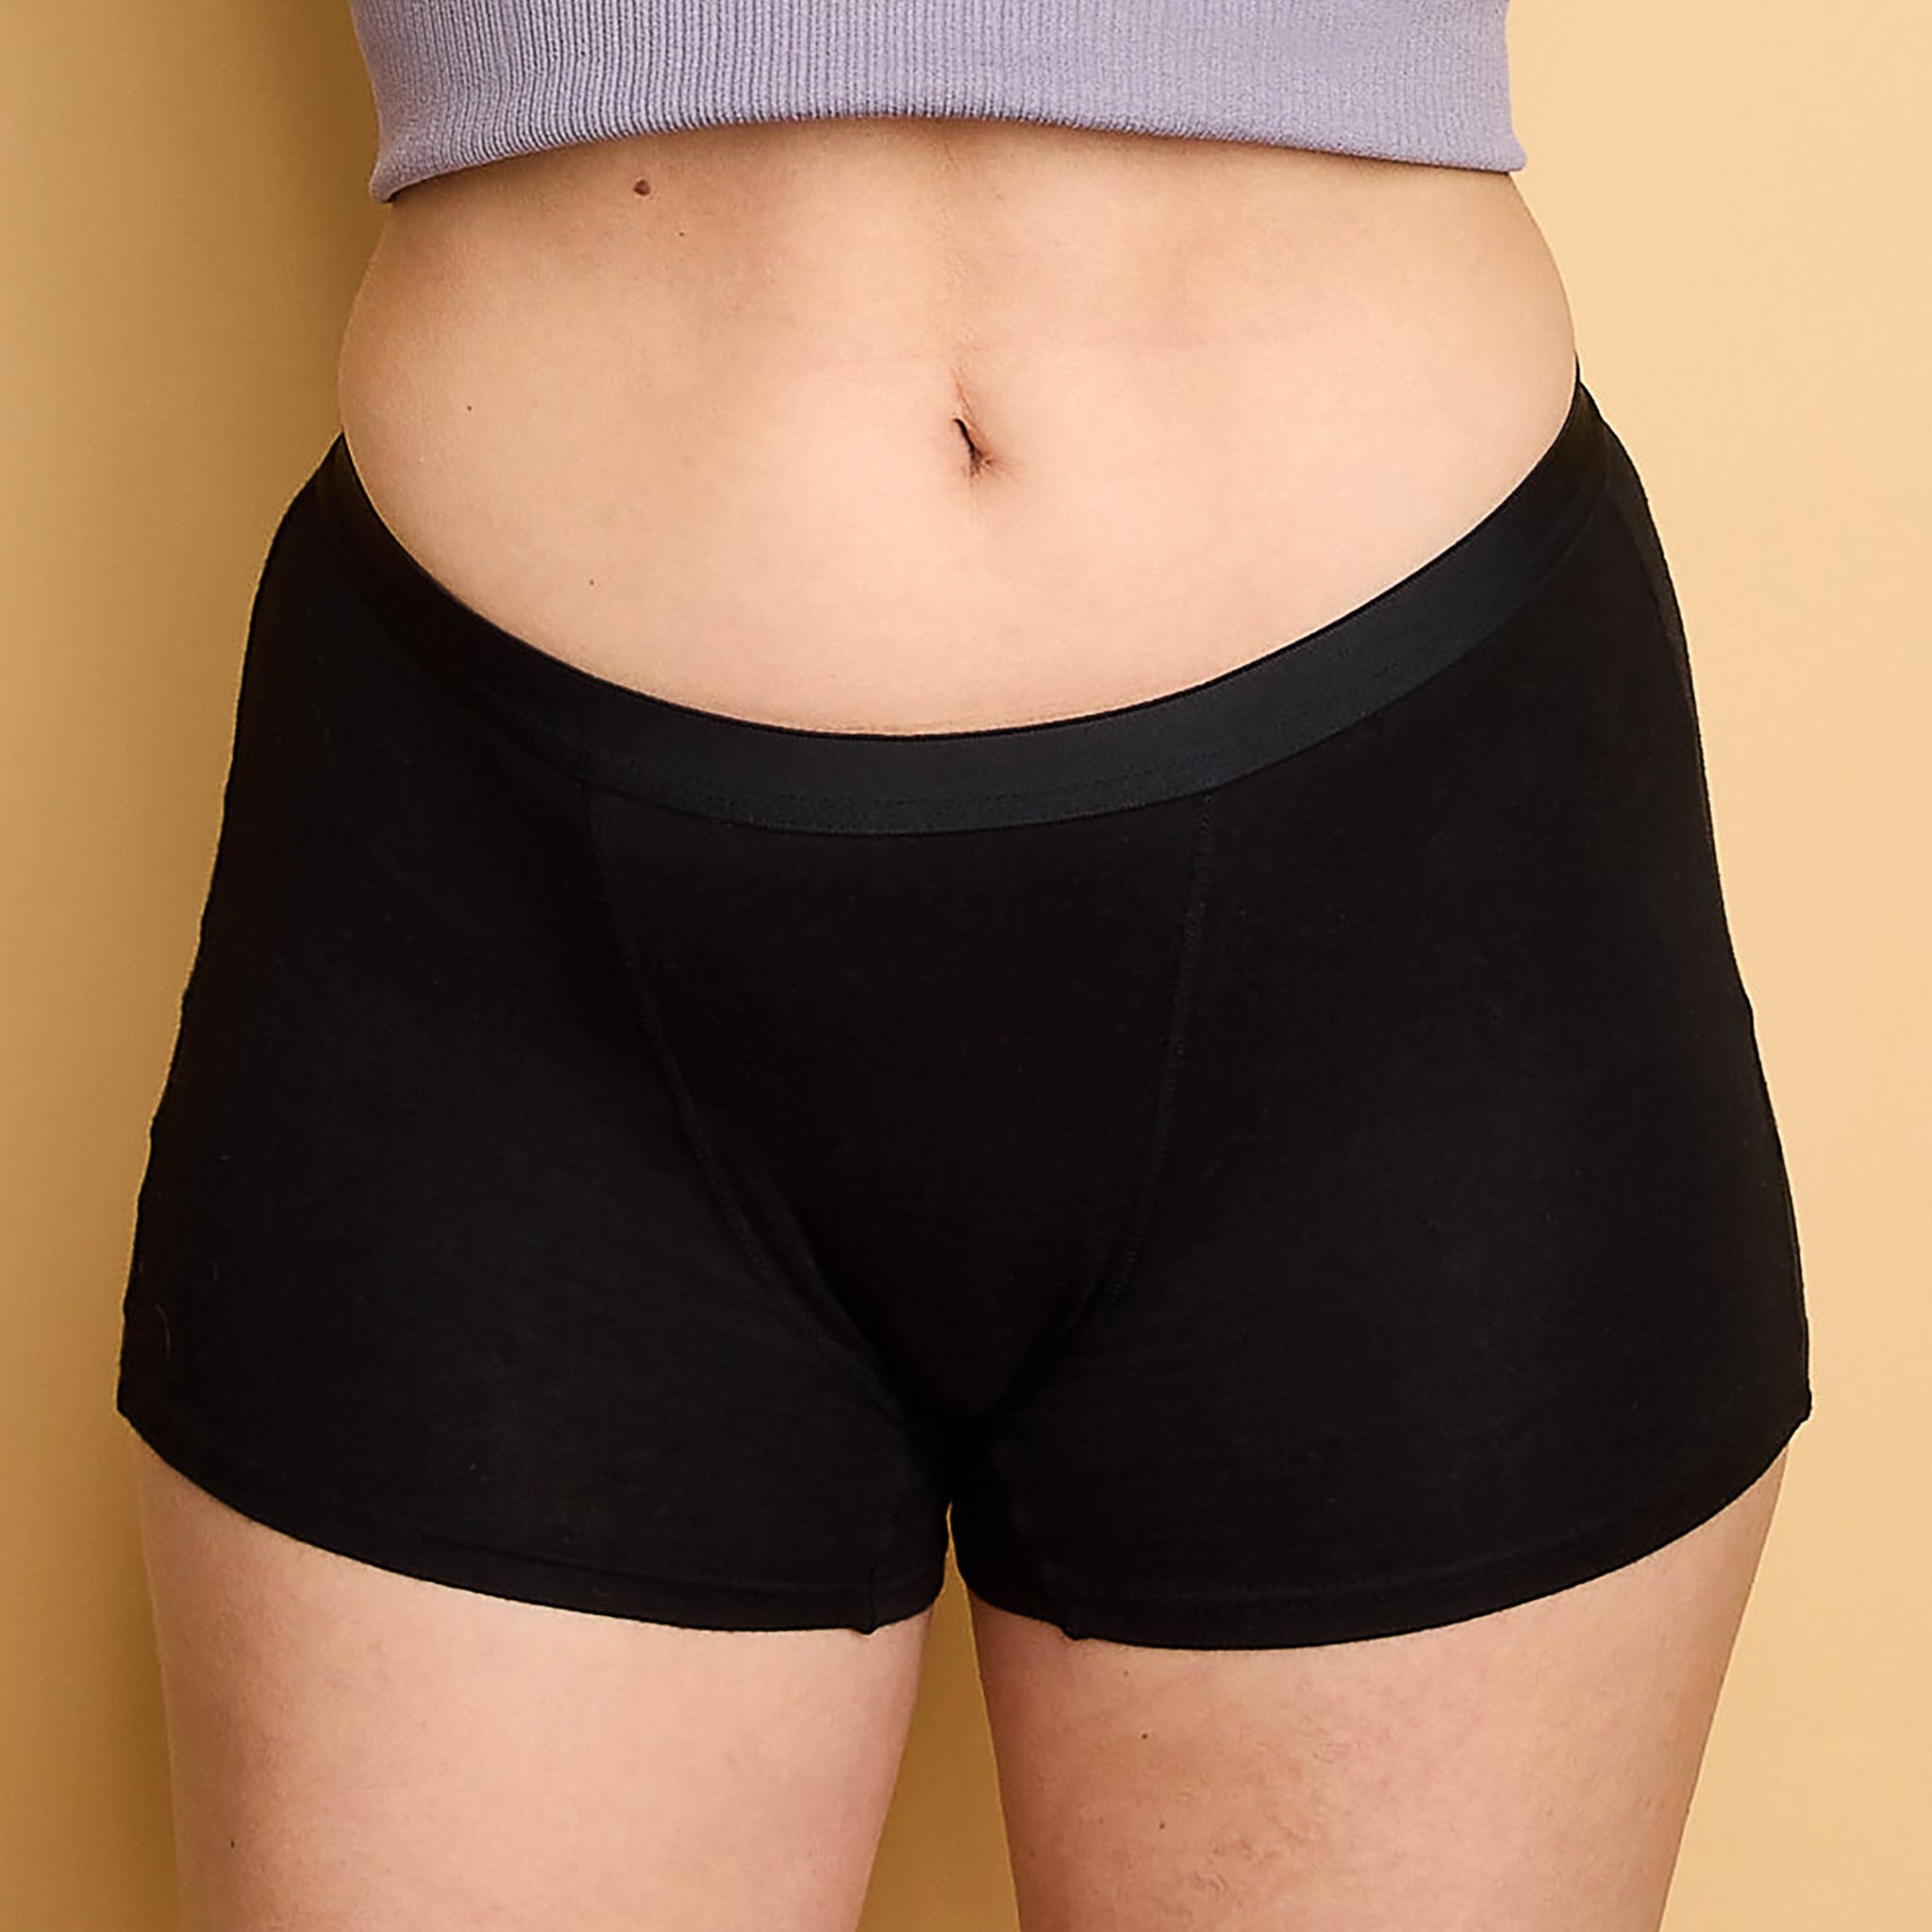 Period underwear Comfort Shorts (heavy days)